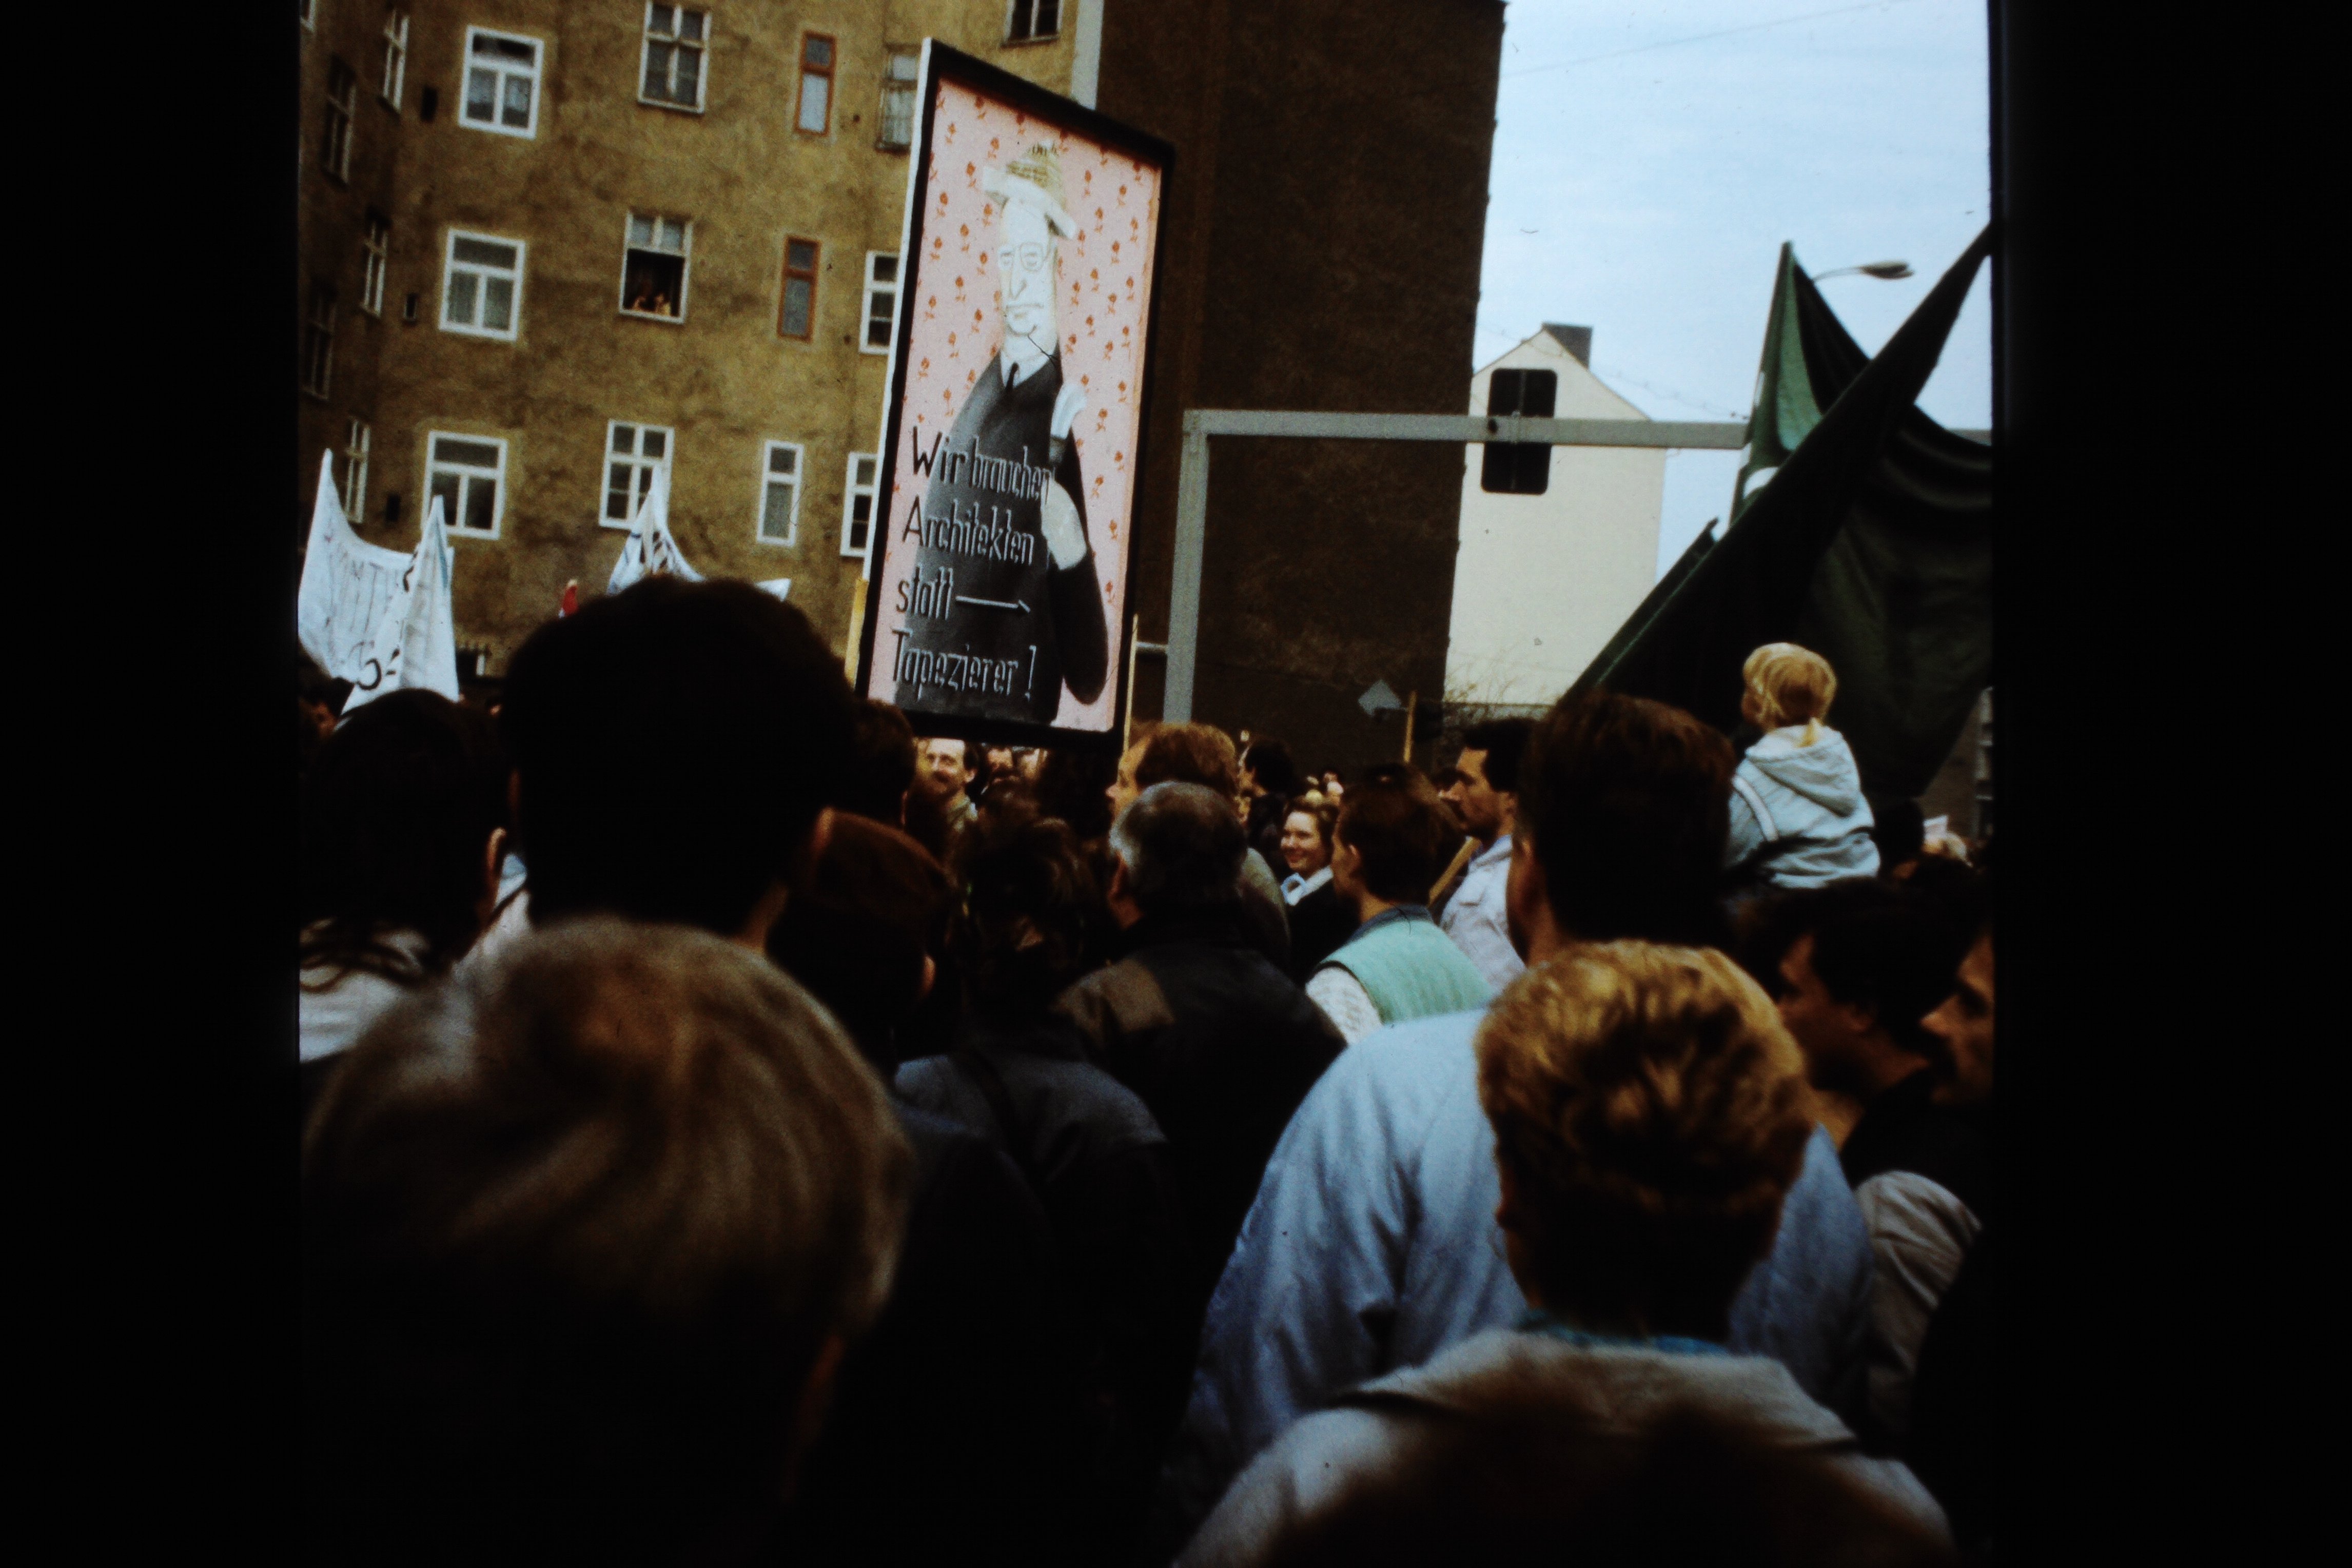 Großdemonstration in Ost-Berlin am 04. November 1989: Plakat mit der Aufschrift: "Wir brauchen Architekten statt Tapezierer" (DDR Geschichtsmuseum im Dokumentationszentrum Perleberg CC BY-SA)